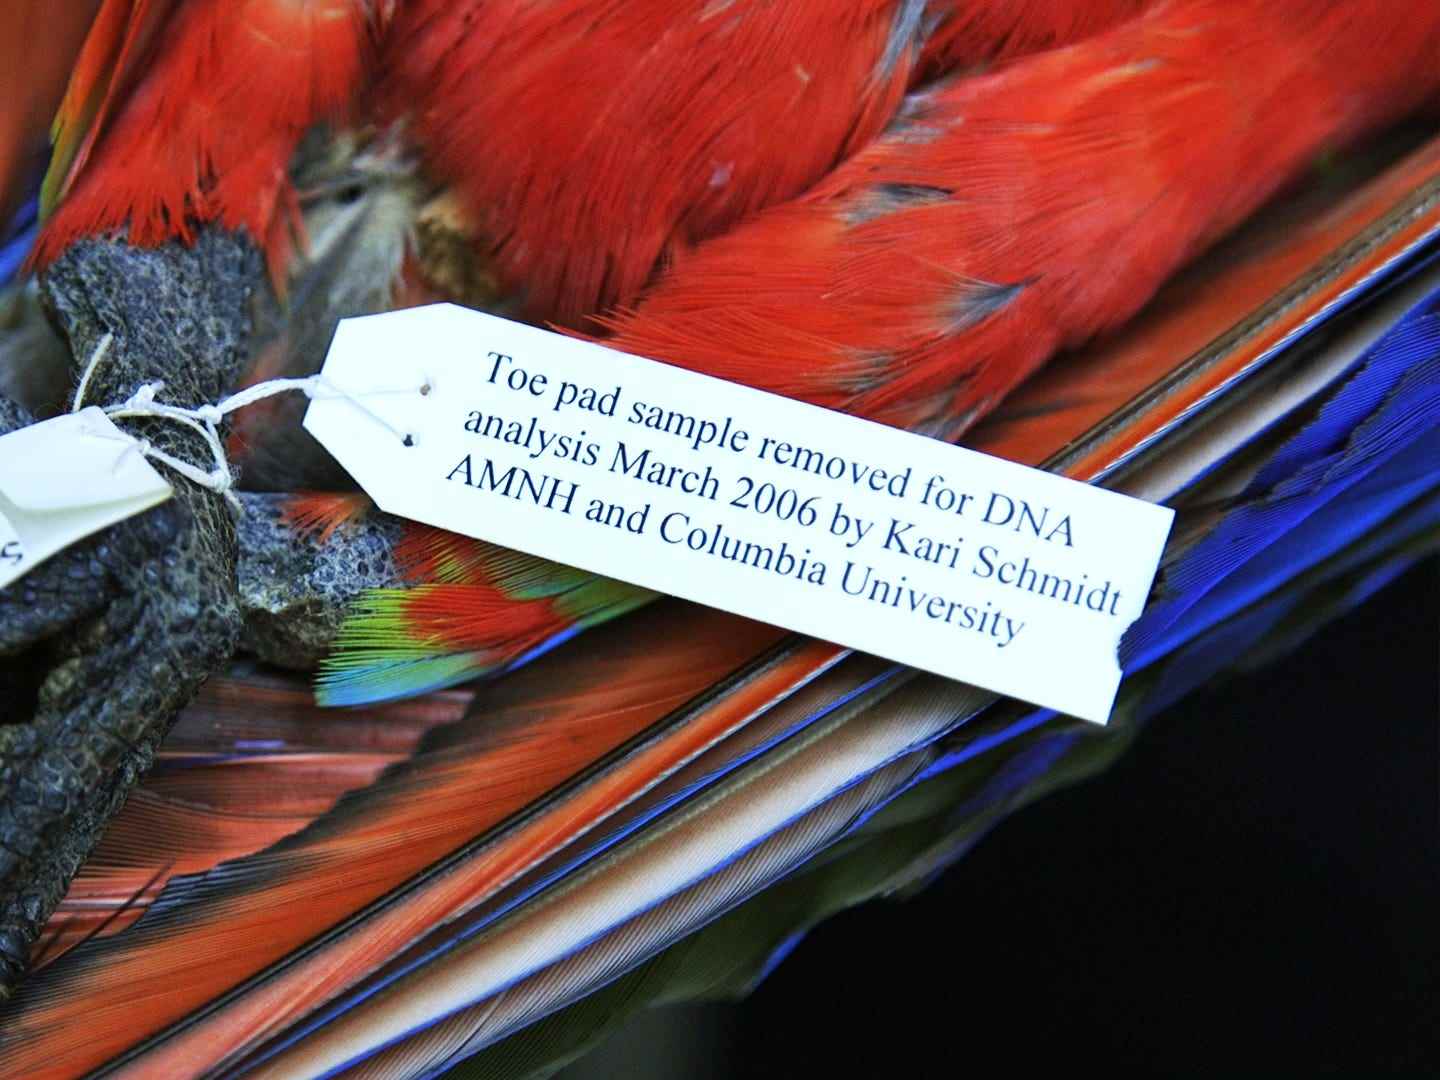 Nahaufnahme eines Etiketts, das beschreibt, welche Arbeiten an dem scharlachroten Ara-Exemplar durchgeführt wurden.